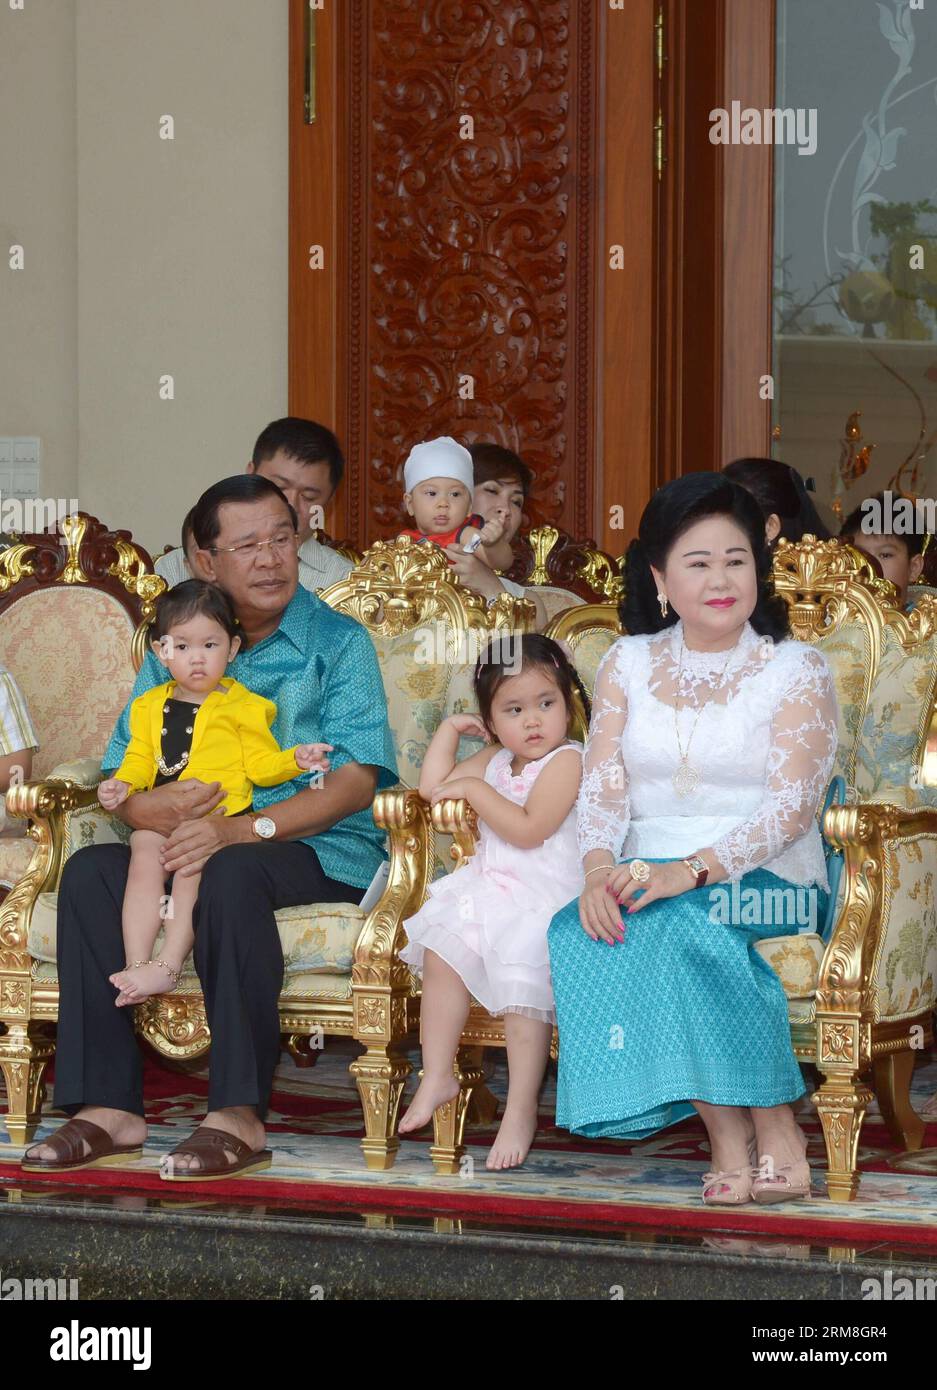 Le Premier ministre cambodgien Hun Sen (à gauche) et son épouse Bun Rany (à droite) siègent avec leurs petits-enfants lors de la célébration du nouvel an khmer à leur résidence à Phnom Penh, Cambodge, le 14 avril 2014. Le Cambodge a organisé lundi une cérémonie élaborée devant la pièce maîtresse du temple Angkor Wat, un site du patrimoine mondial, dans la province de Siem Reap pour saluer le festival Sangkranta ou le nouvel an khmer. (Xinhua/Sovannara) CAMBODGE-PHNOM PENH-KHMER CÉRÉMONIE DU NOUVEL AN PUBLICATIONxNOTxINxCHN les premiers ministres cambodgiens HUN Sen l et son épouse Bun Rany r siègent avec leurs petits-enfants pendant la célébration du nouvel an khmer Banque D'Images